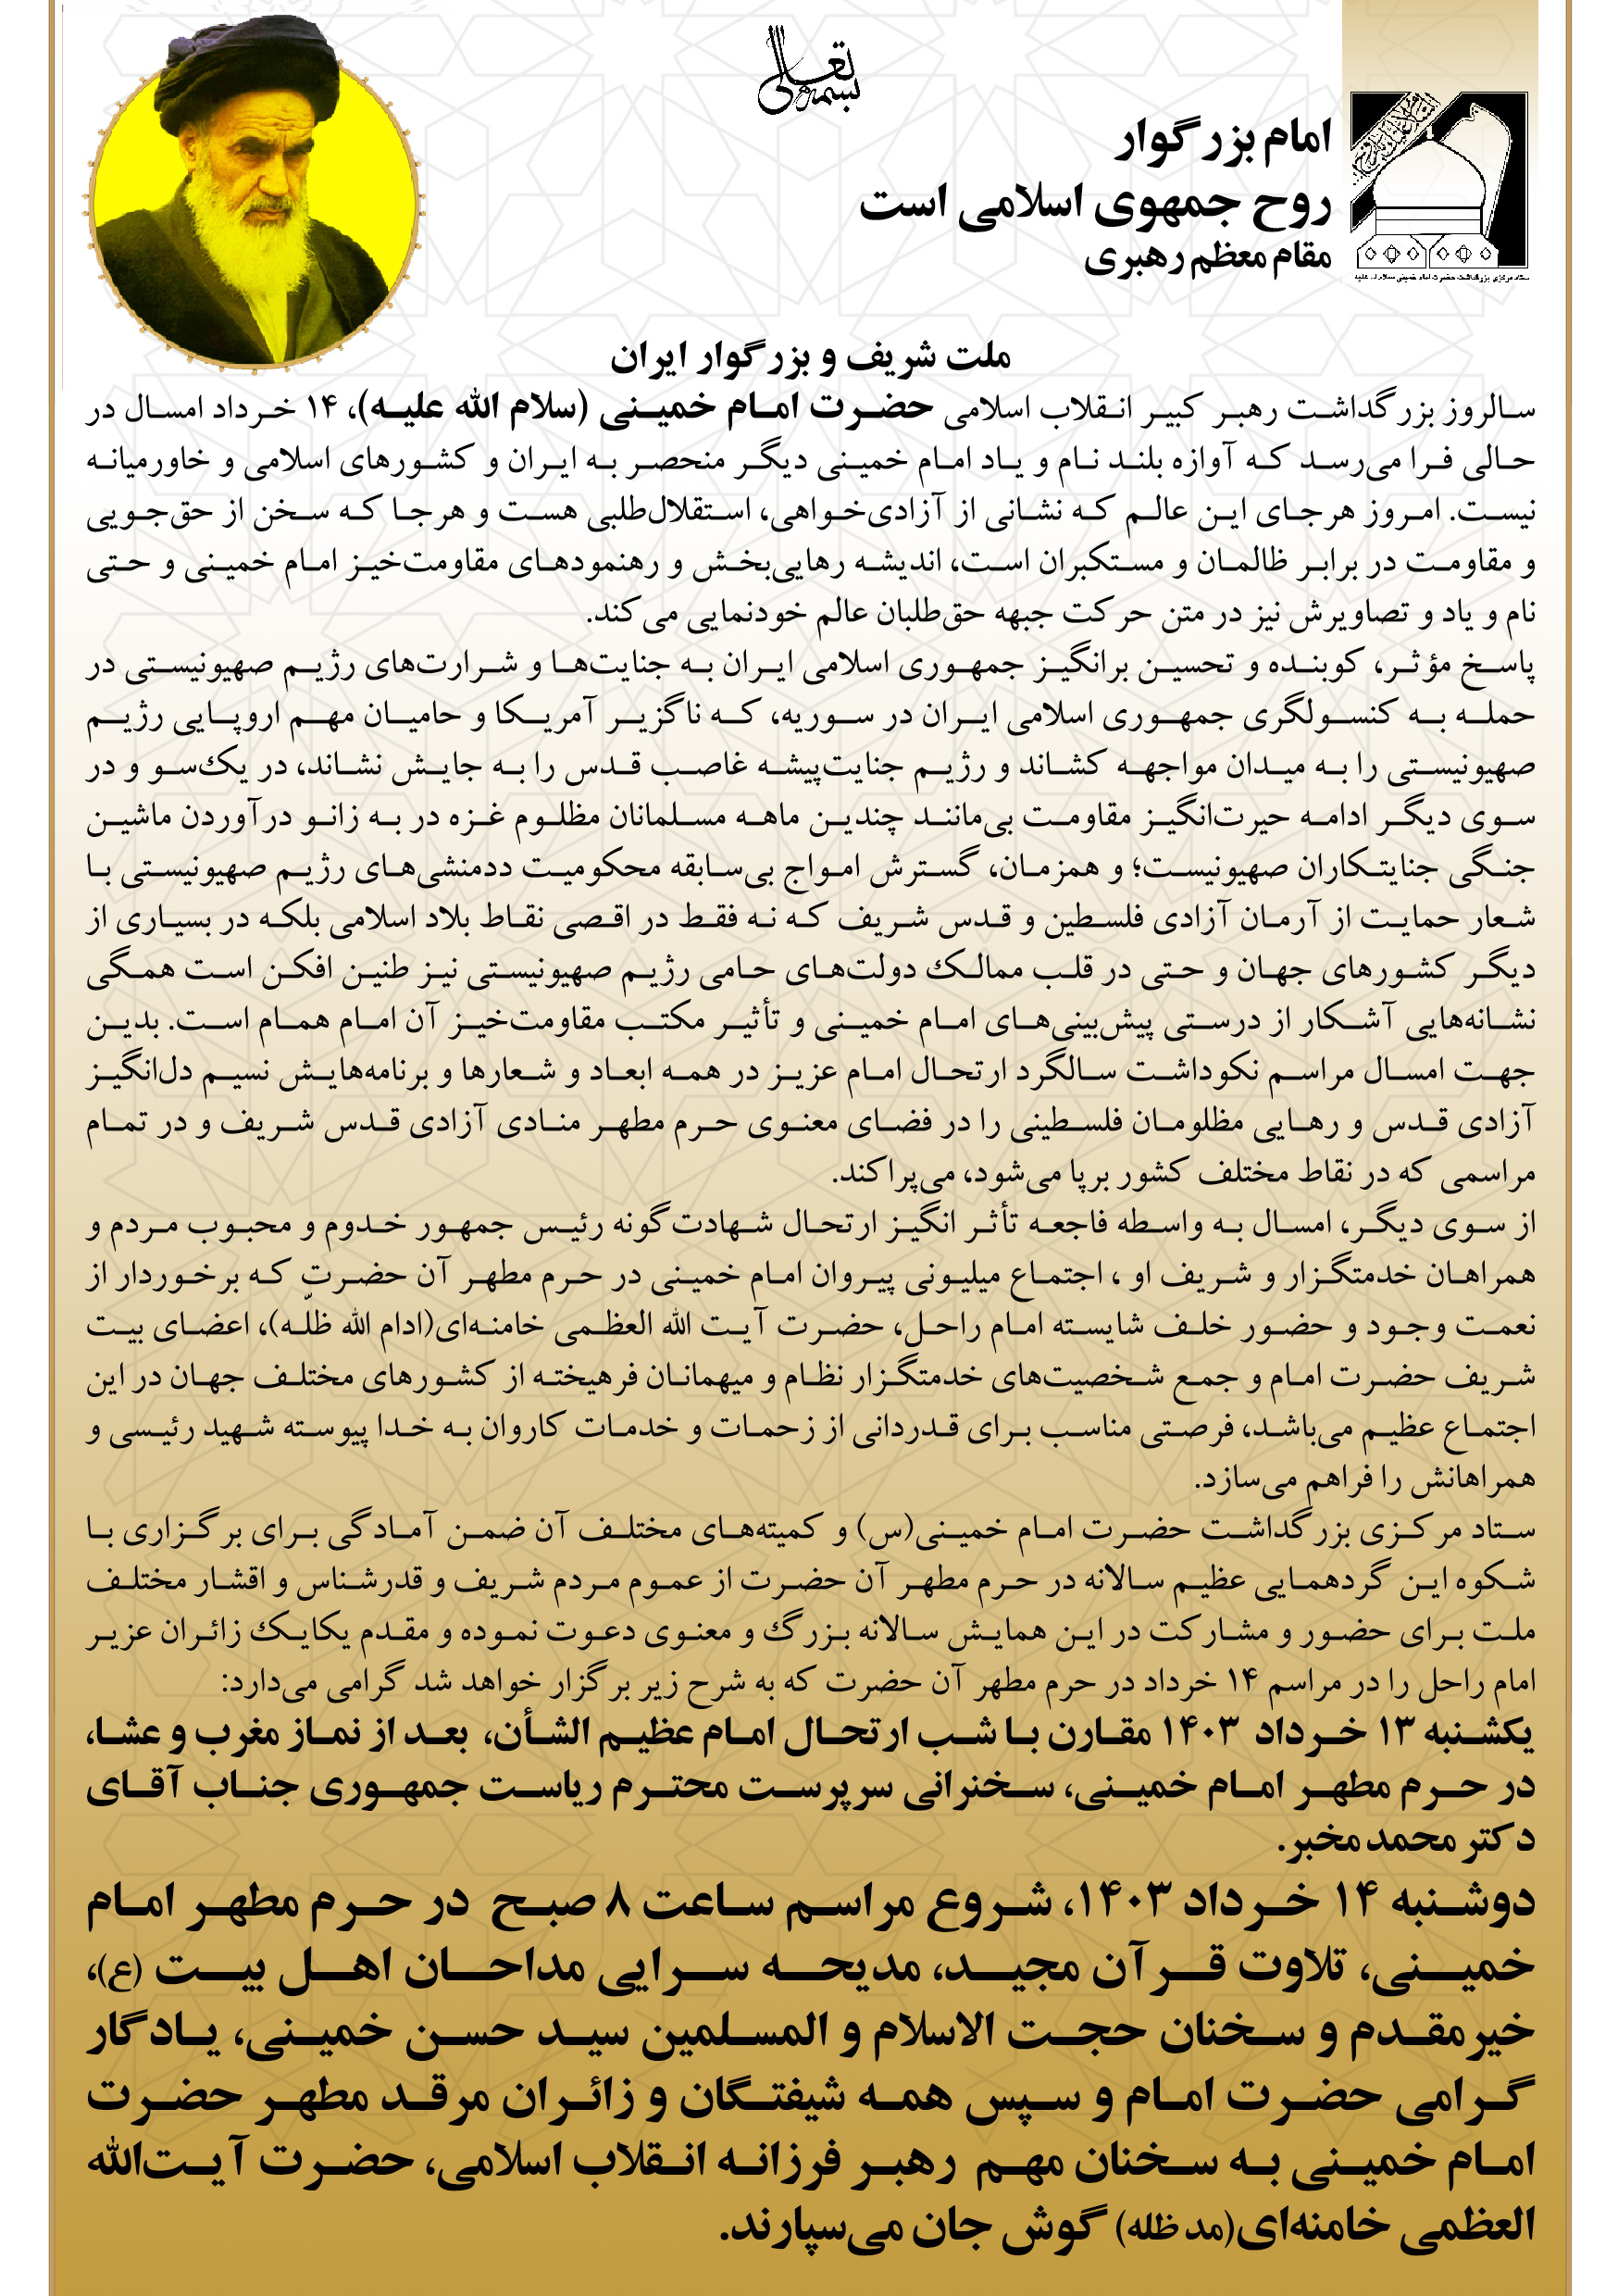 اطلاعیه ستاد مرکزی بزرگداشت حضرت امام خمینی (س) در خصوص برنامه های 13 و 14 خرداد 